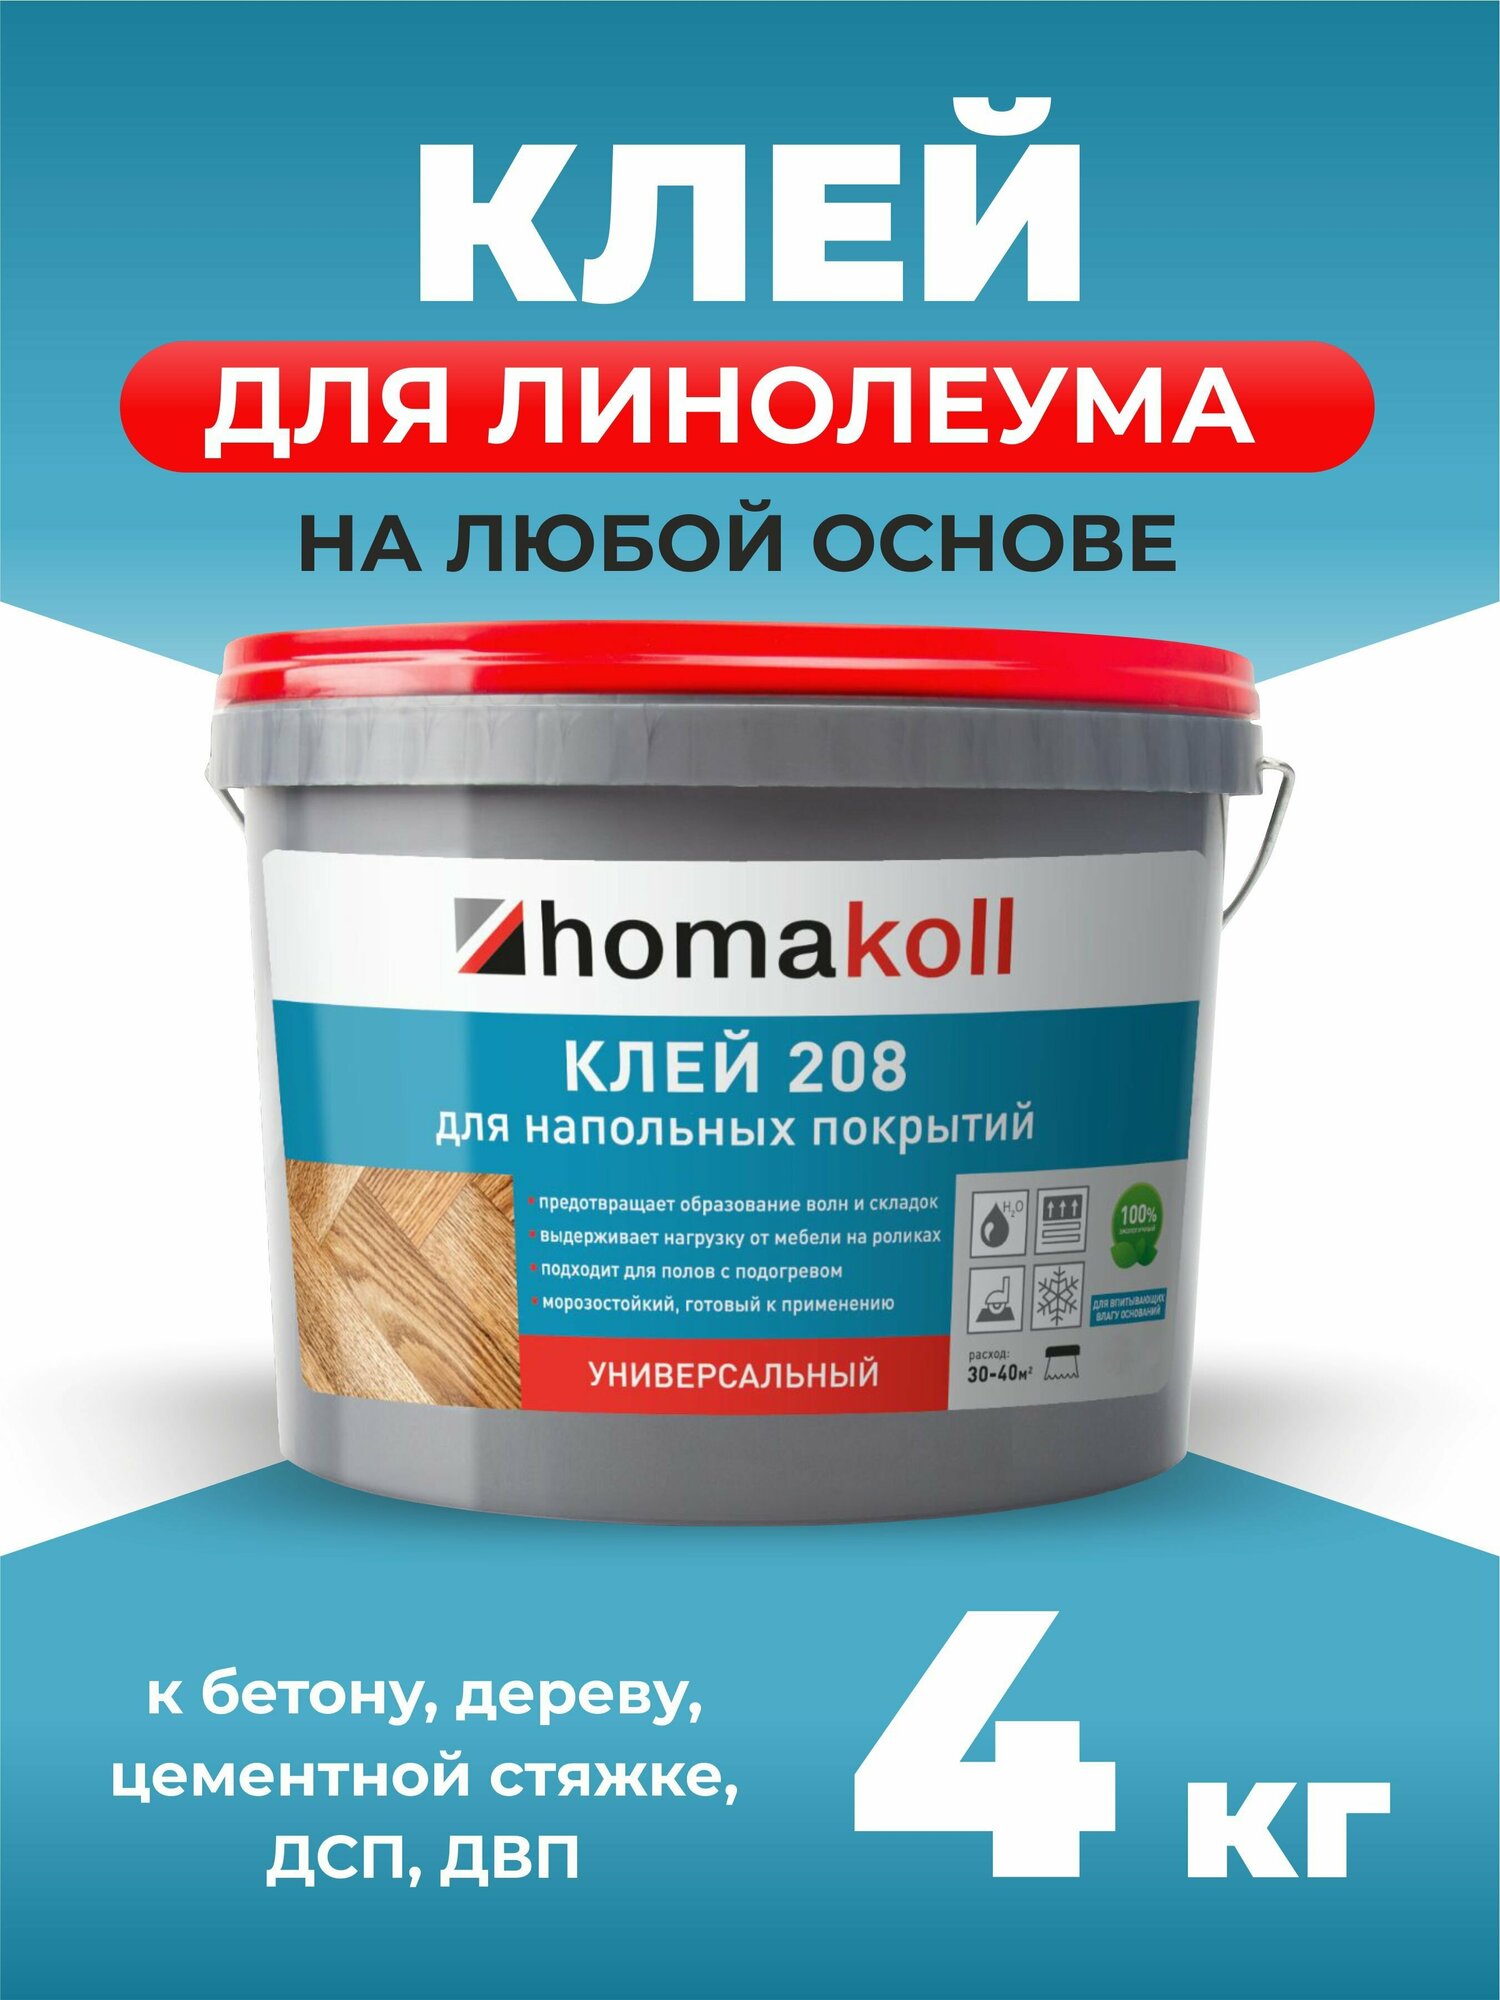 Клей homakoll 208 4 кг